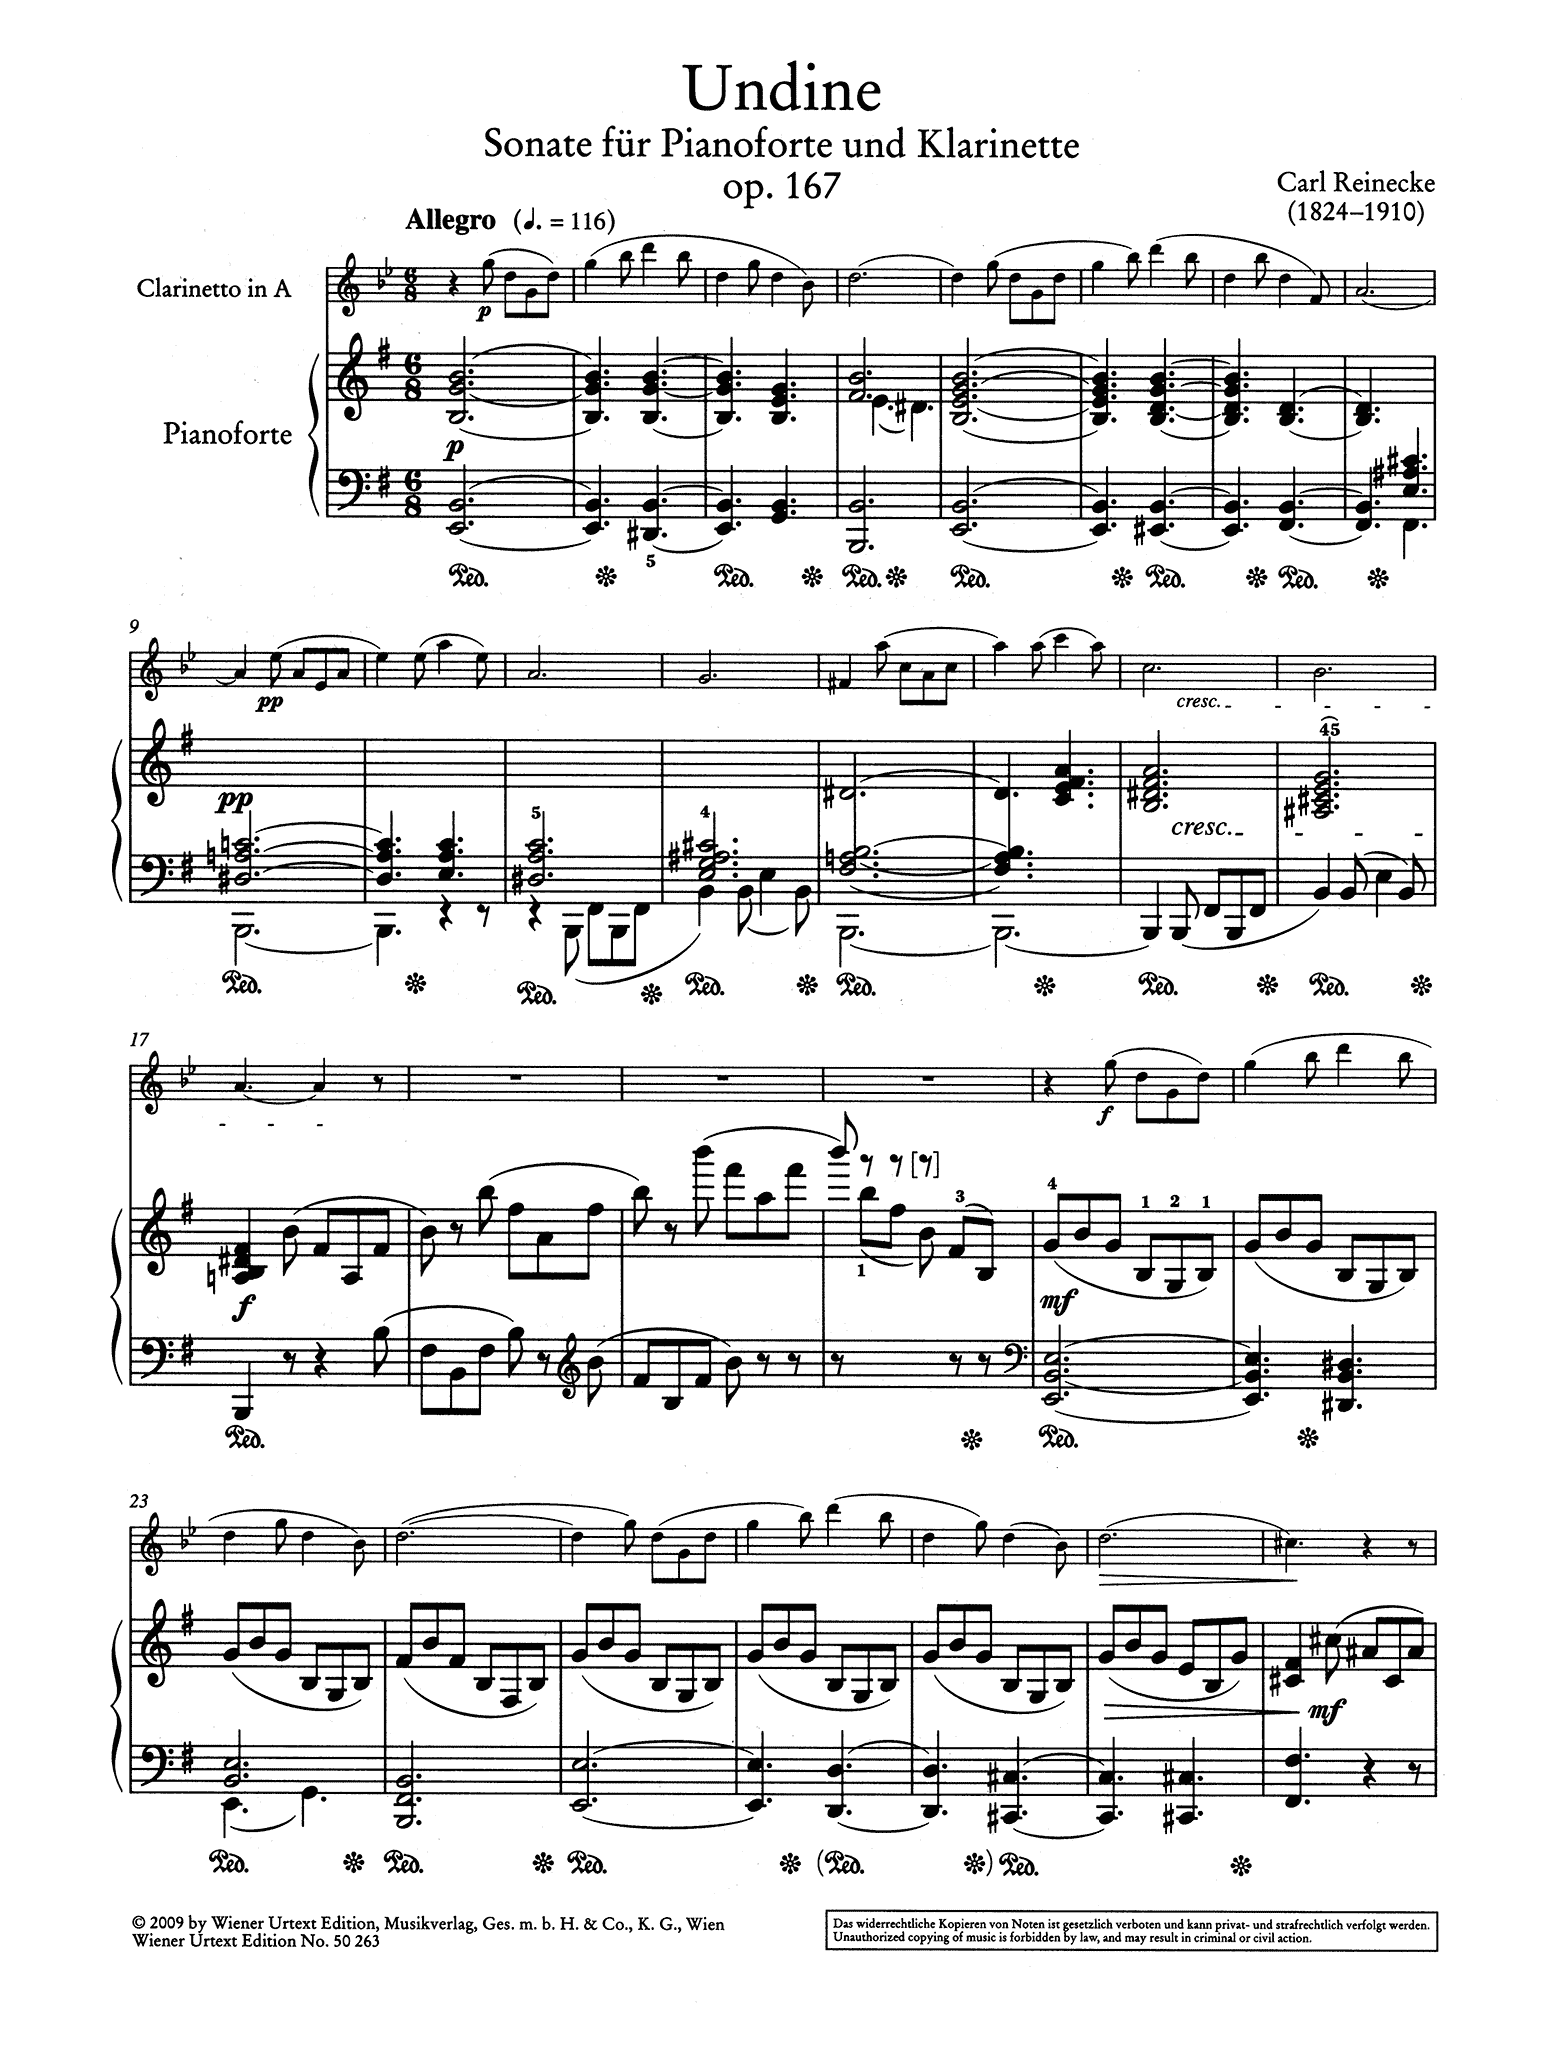 Sonata for Clarinet & Piano, Op. 167 ‘Undine’ - Movement 1